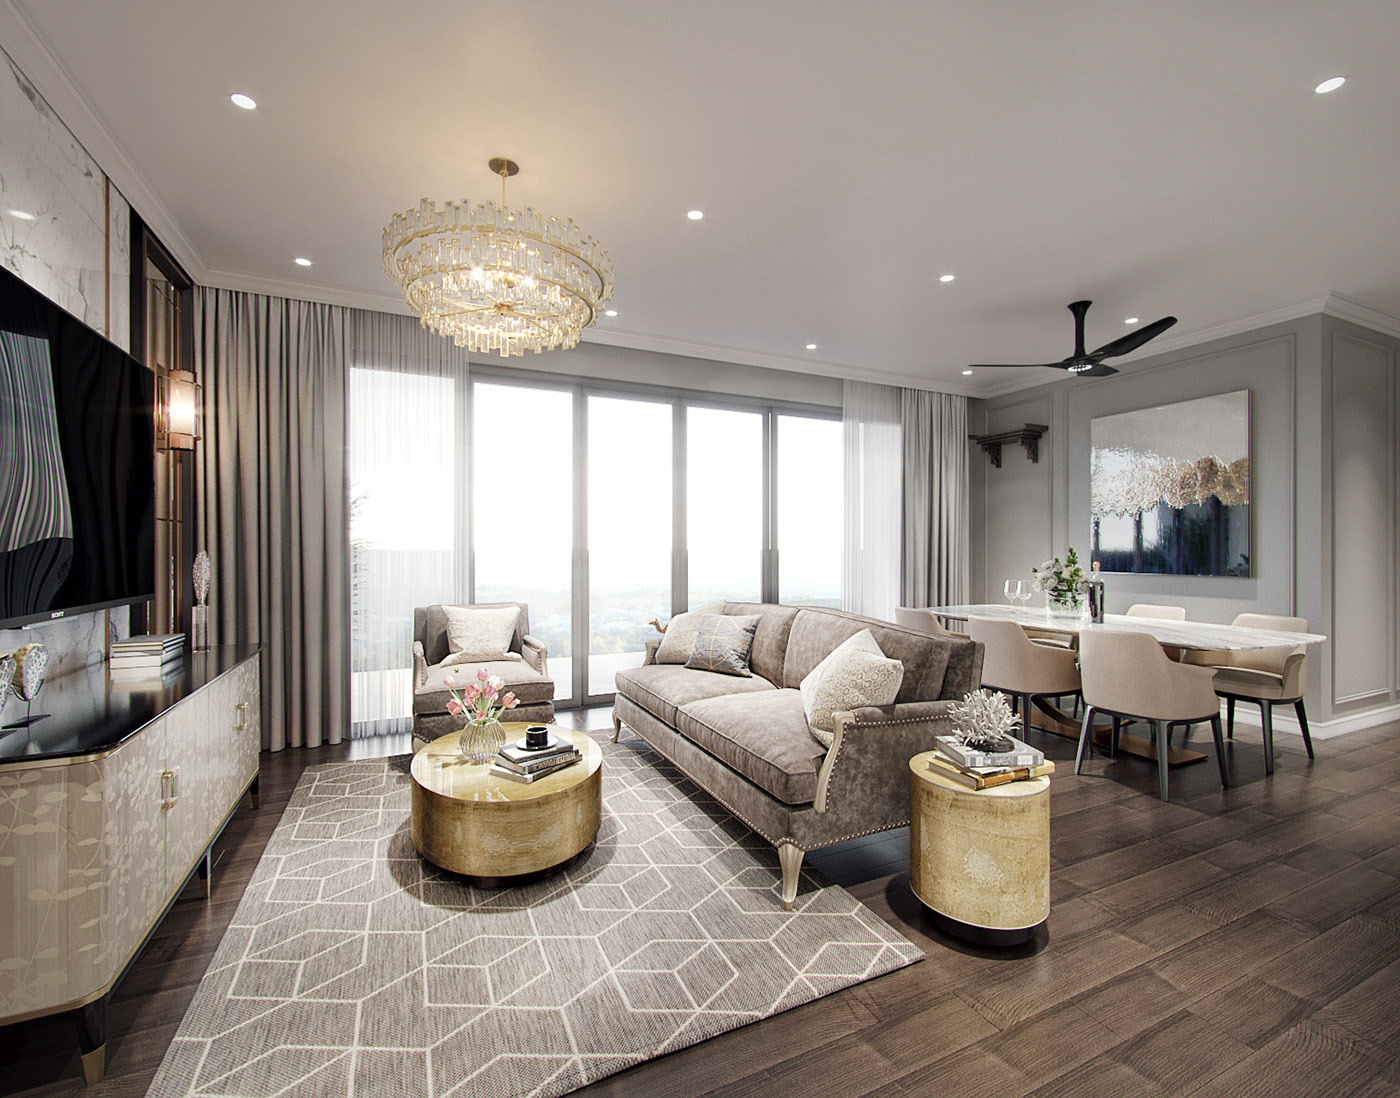 Neoclassical style apartment interior design